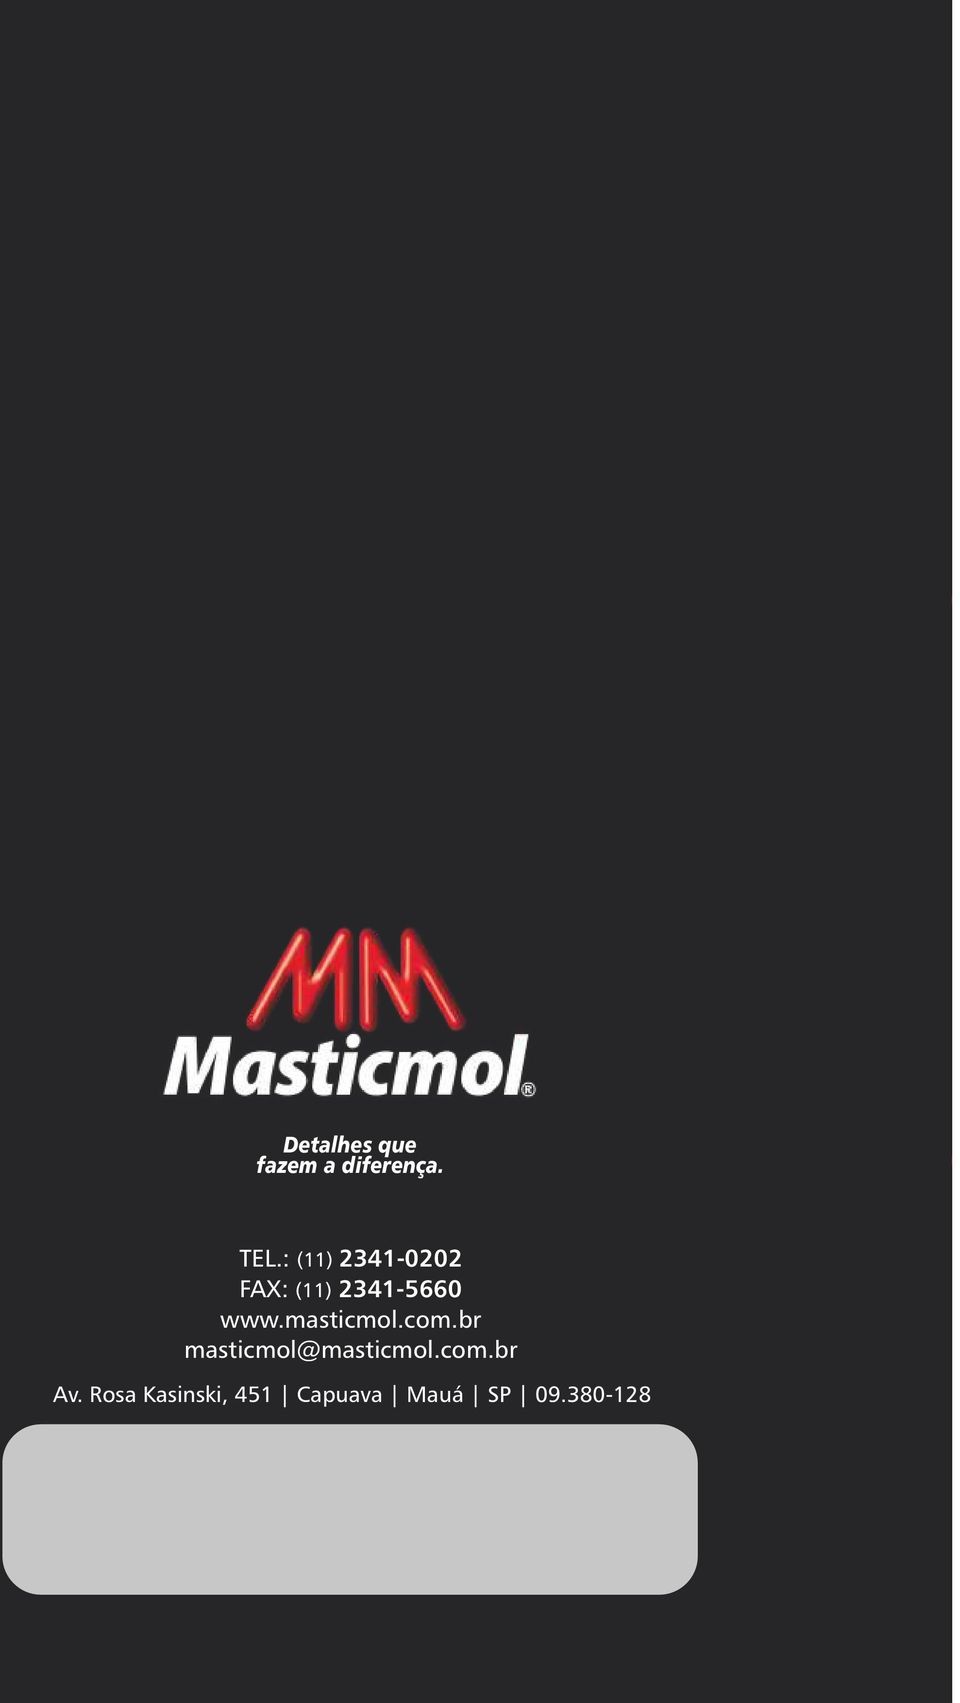 masticmol.com.br masticmol@masticmol.com.br Av.